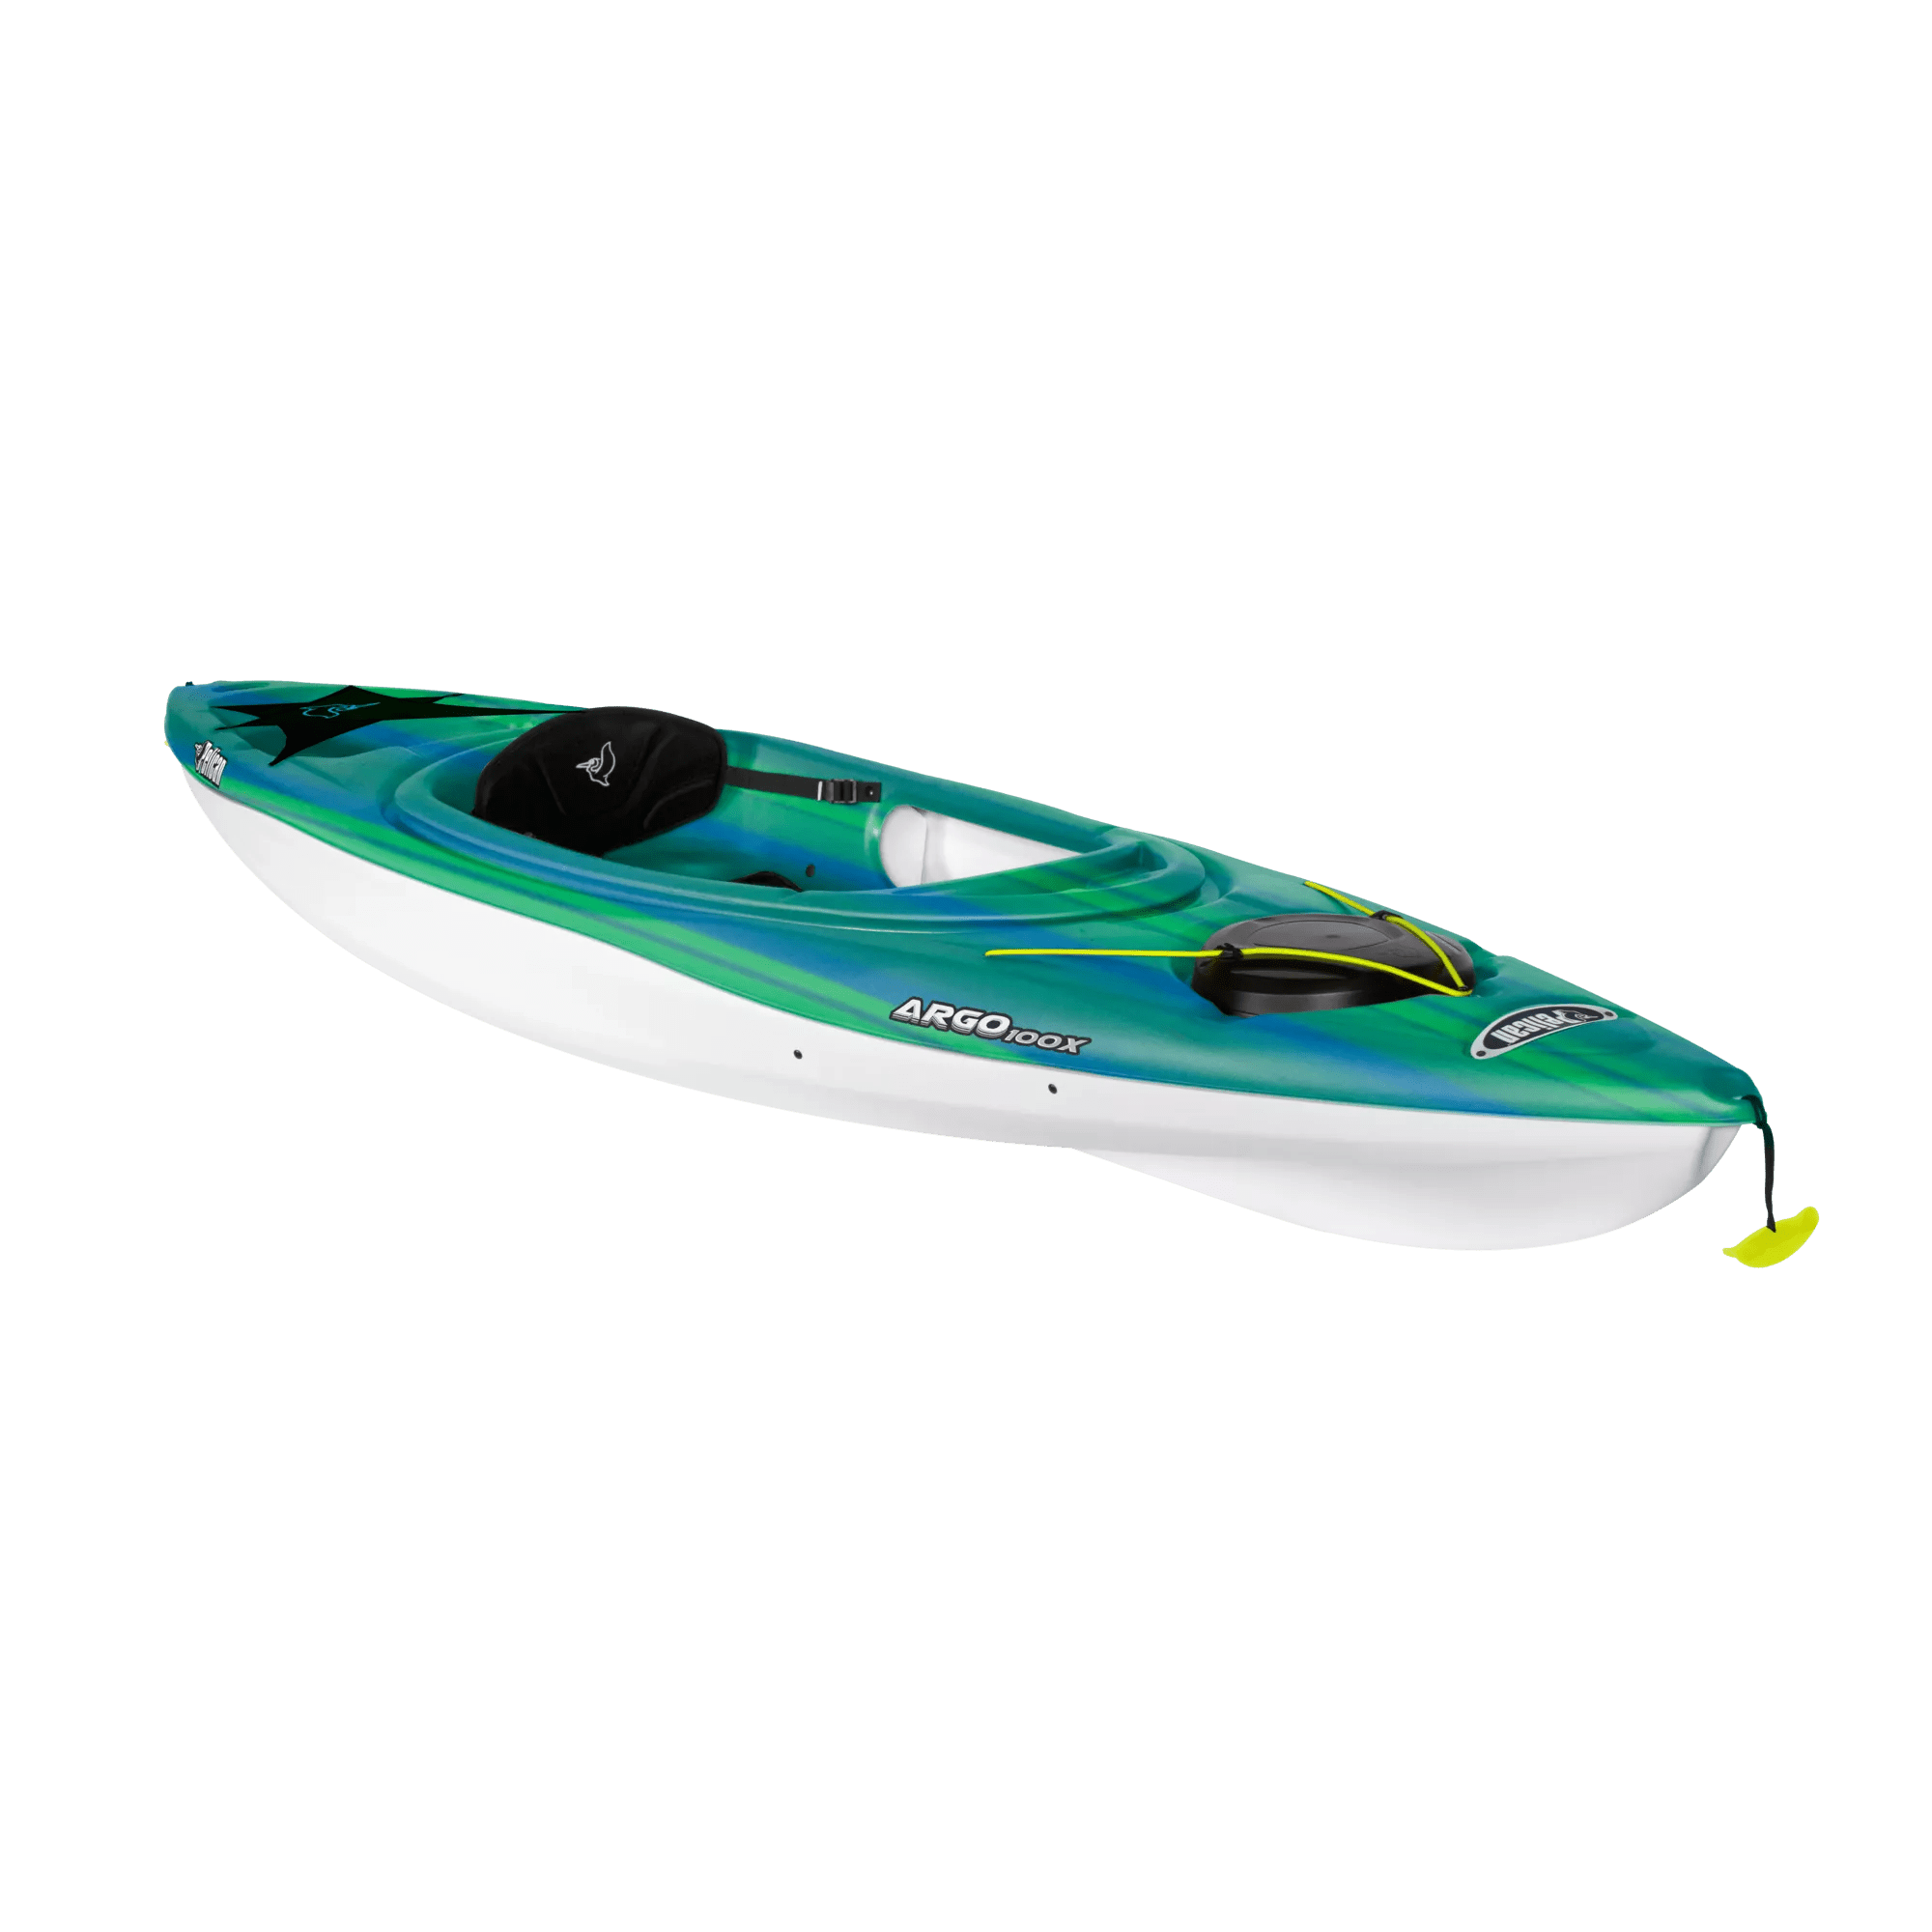 PELICAN - Argo 100X Sit-In Kayak - Blue - KFF10P103-00 - ISO